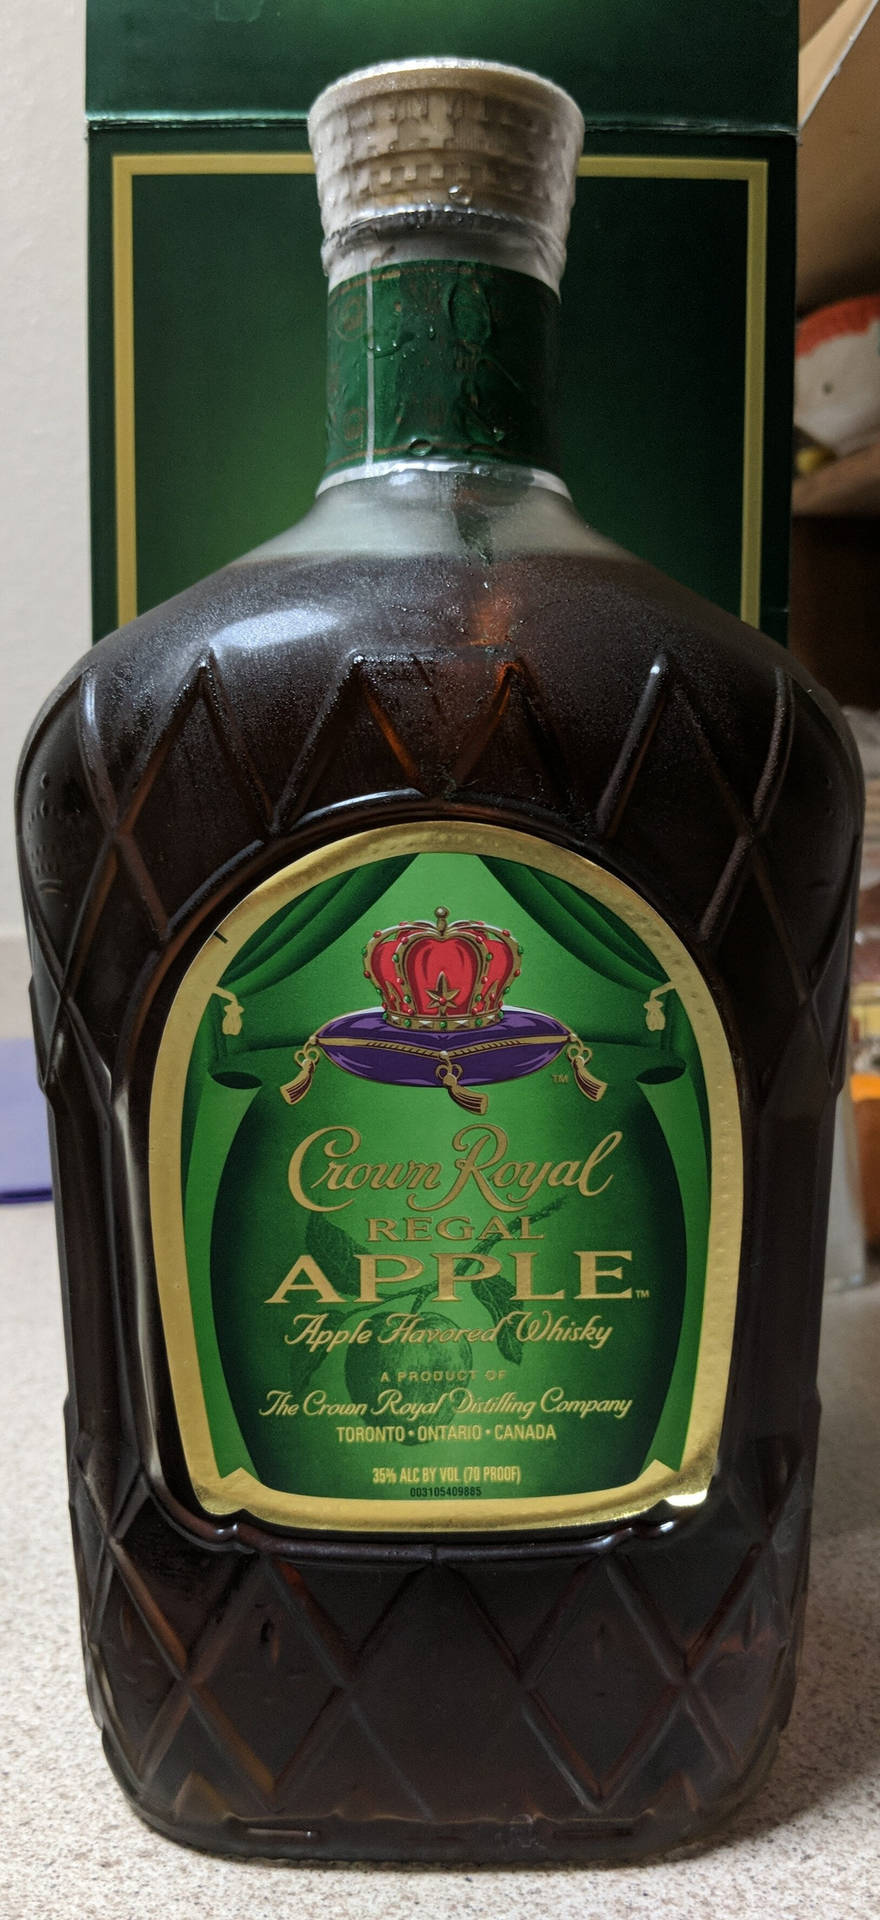 Kungligawhiskyn Från Crown Royal. Wallpaper